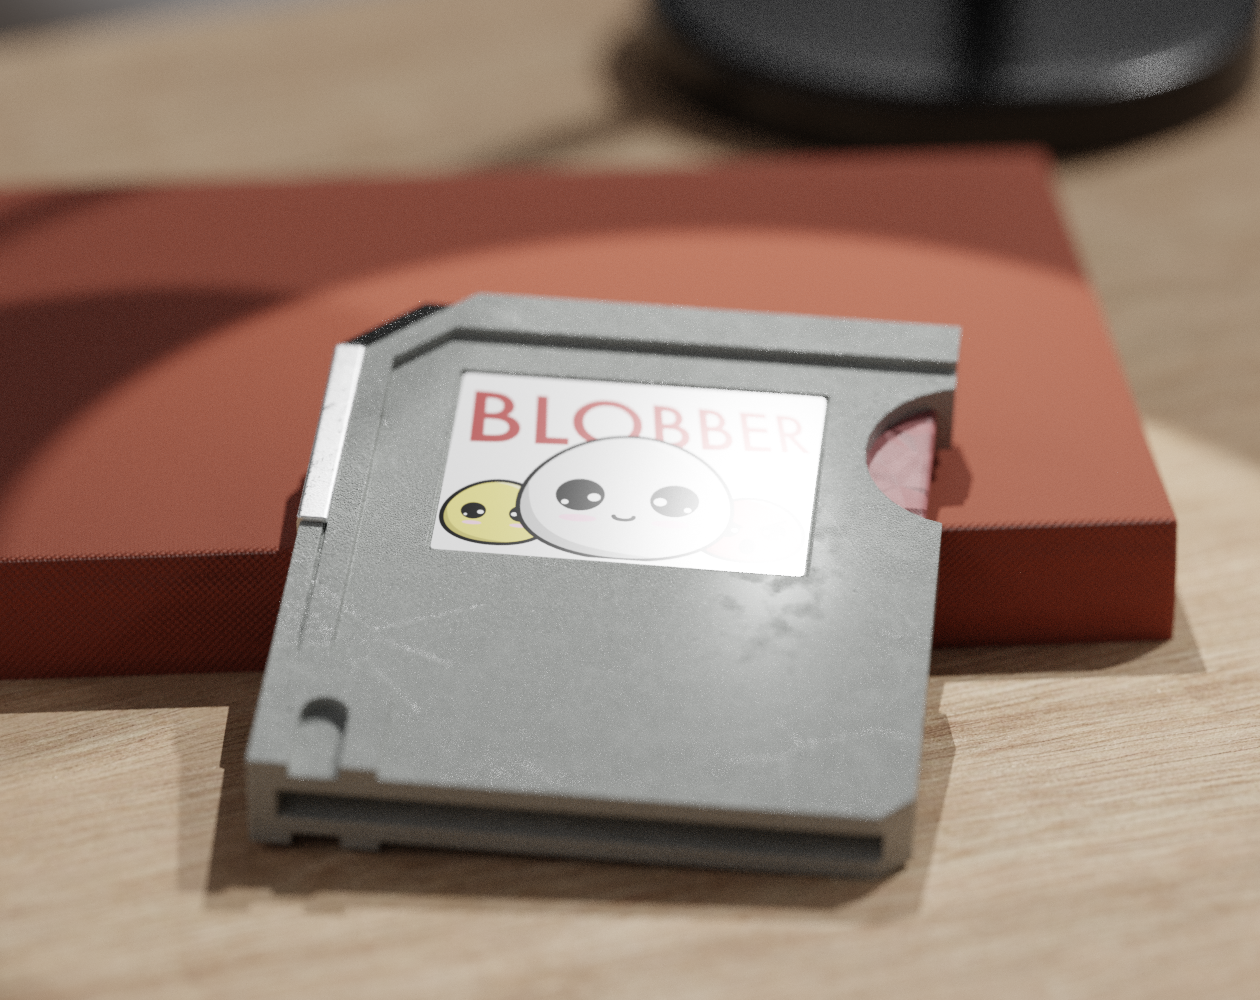 Blobber game cartridge